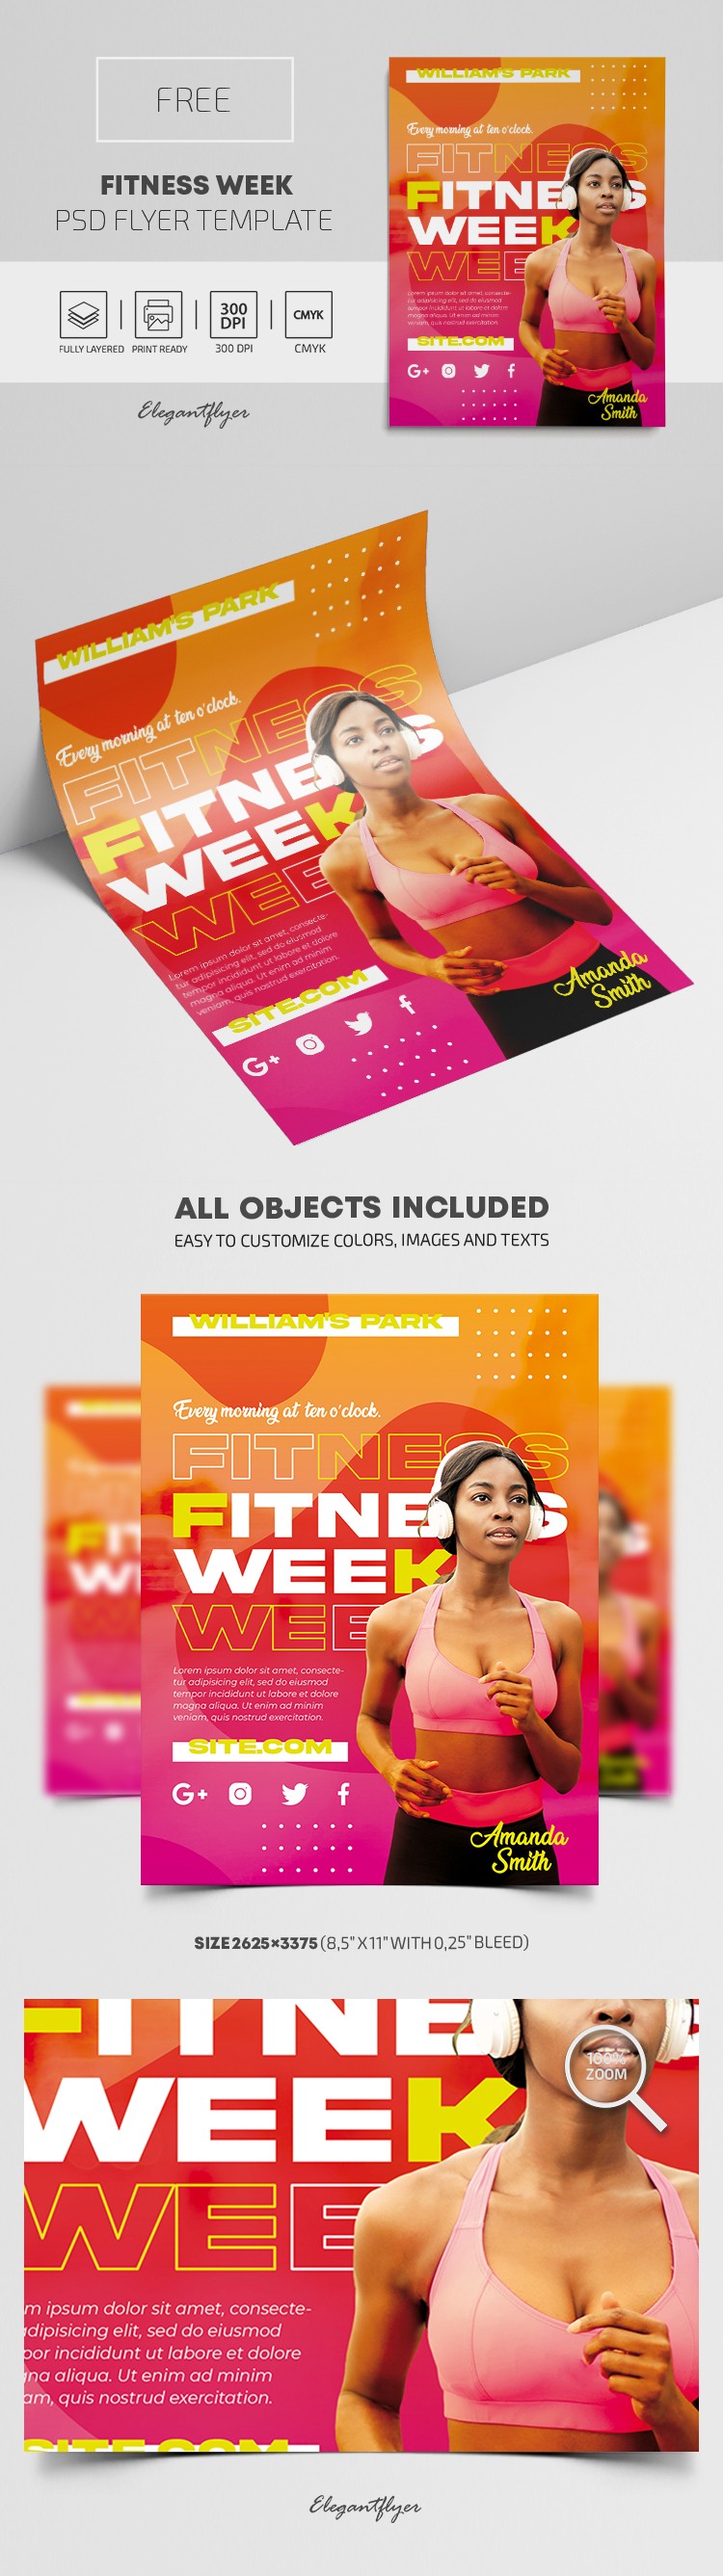 Fitness Week Flyer by ElegantFlyer